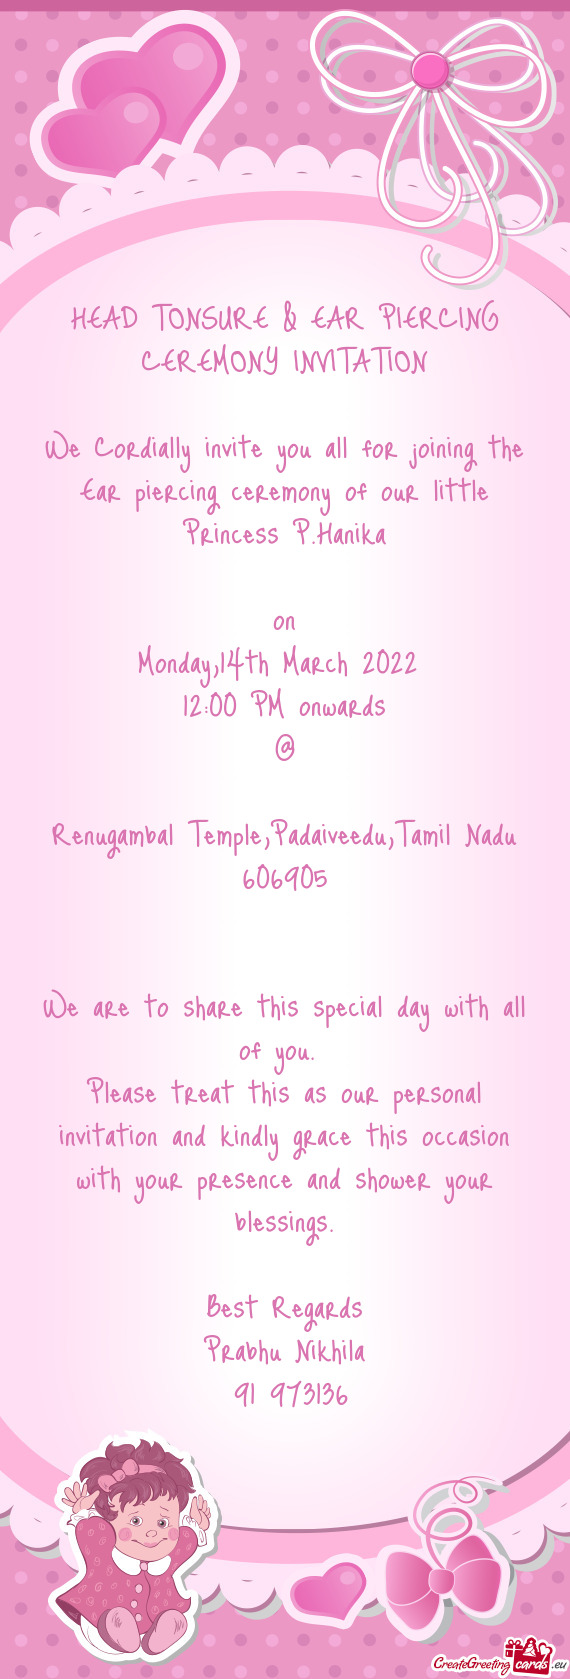 Renugambal Temple,Padaiveedu,Tamil Nadu 606905